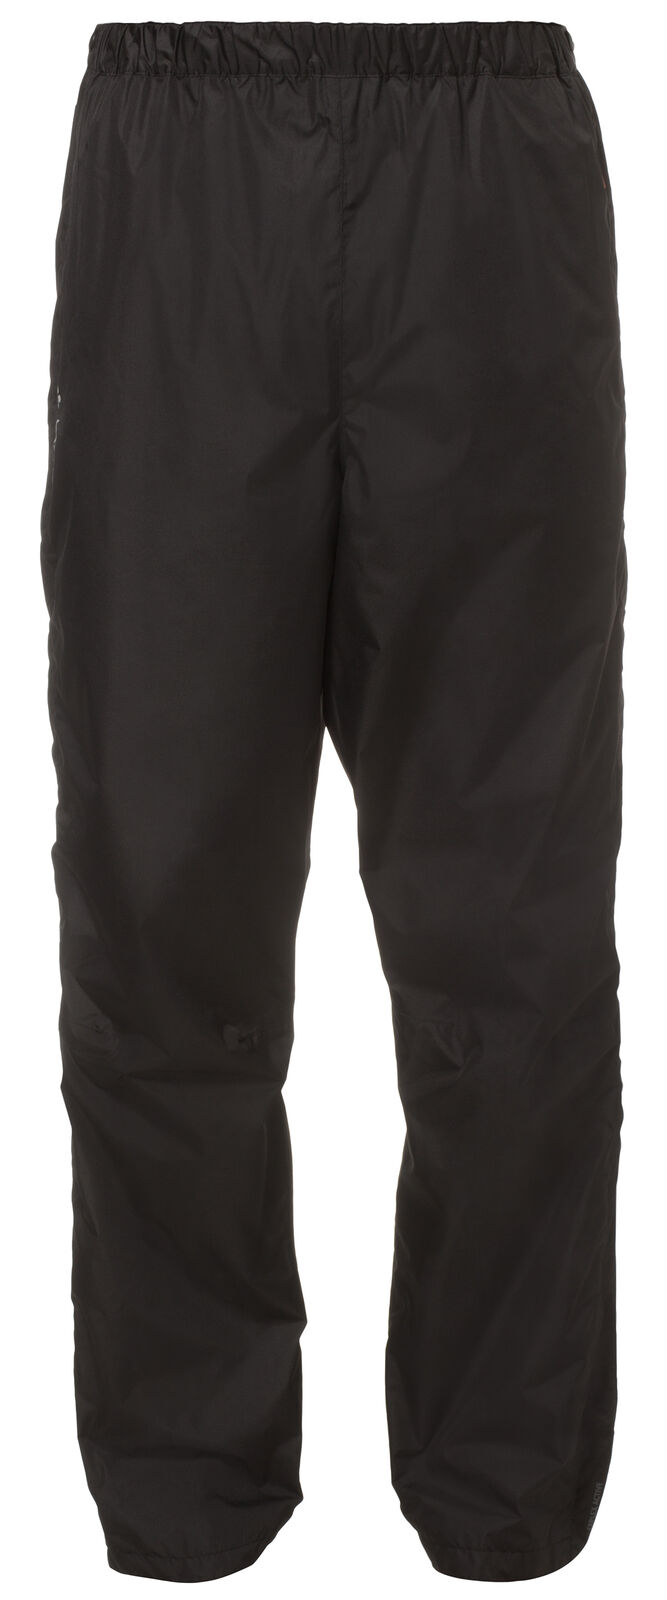 Vaude - Fluid Full-Zip Pants II - Pantalón impermeable - Hombre